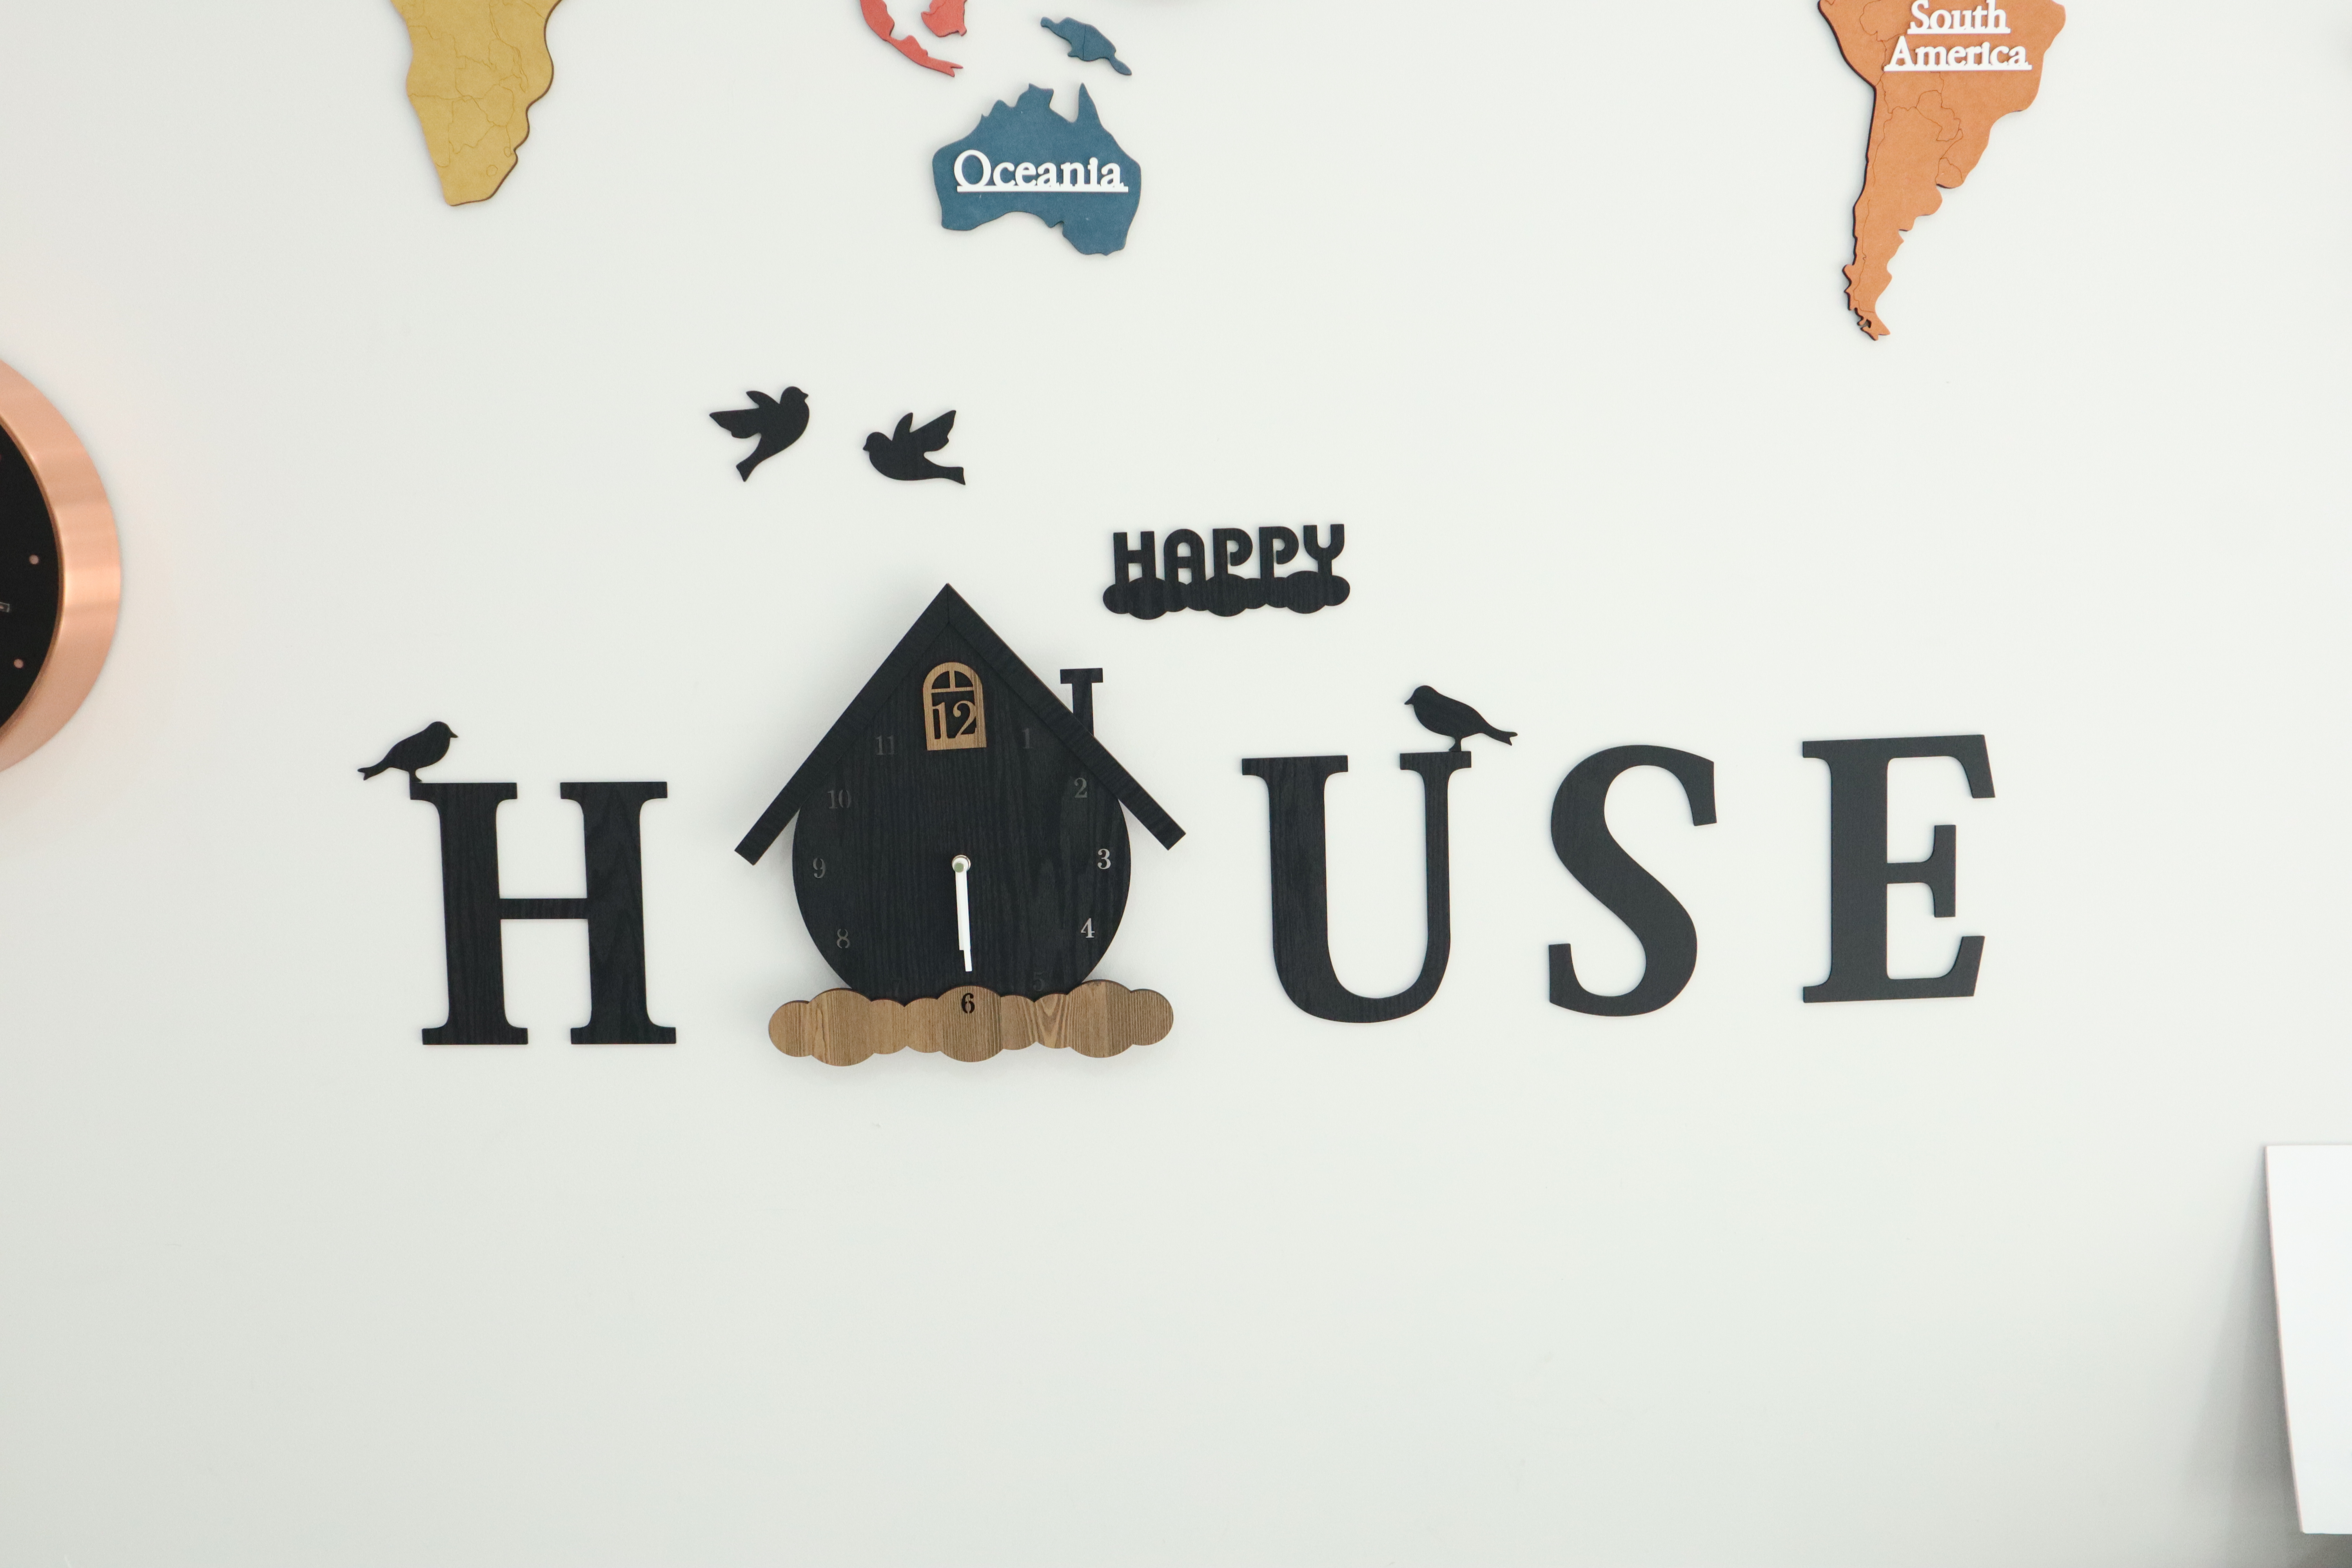 Đồng hồ treo tường trang trí decor nhà cửa hình chữ House - House wall clock